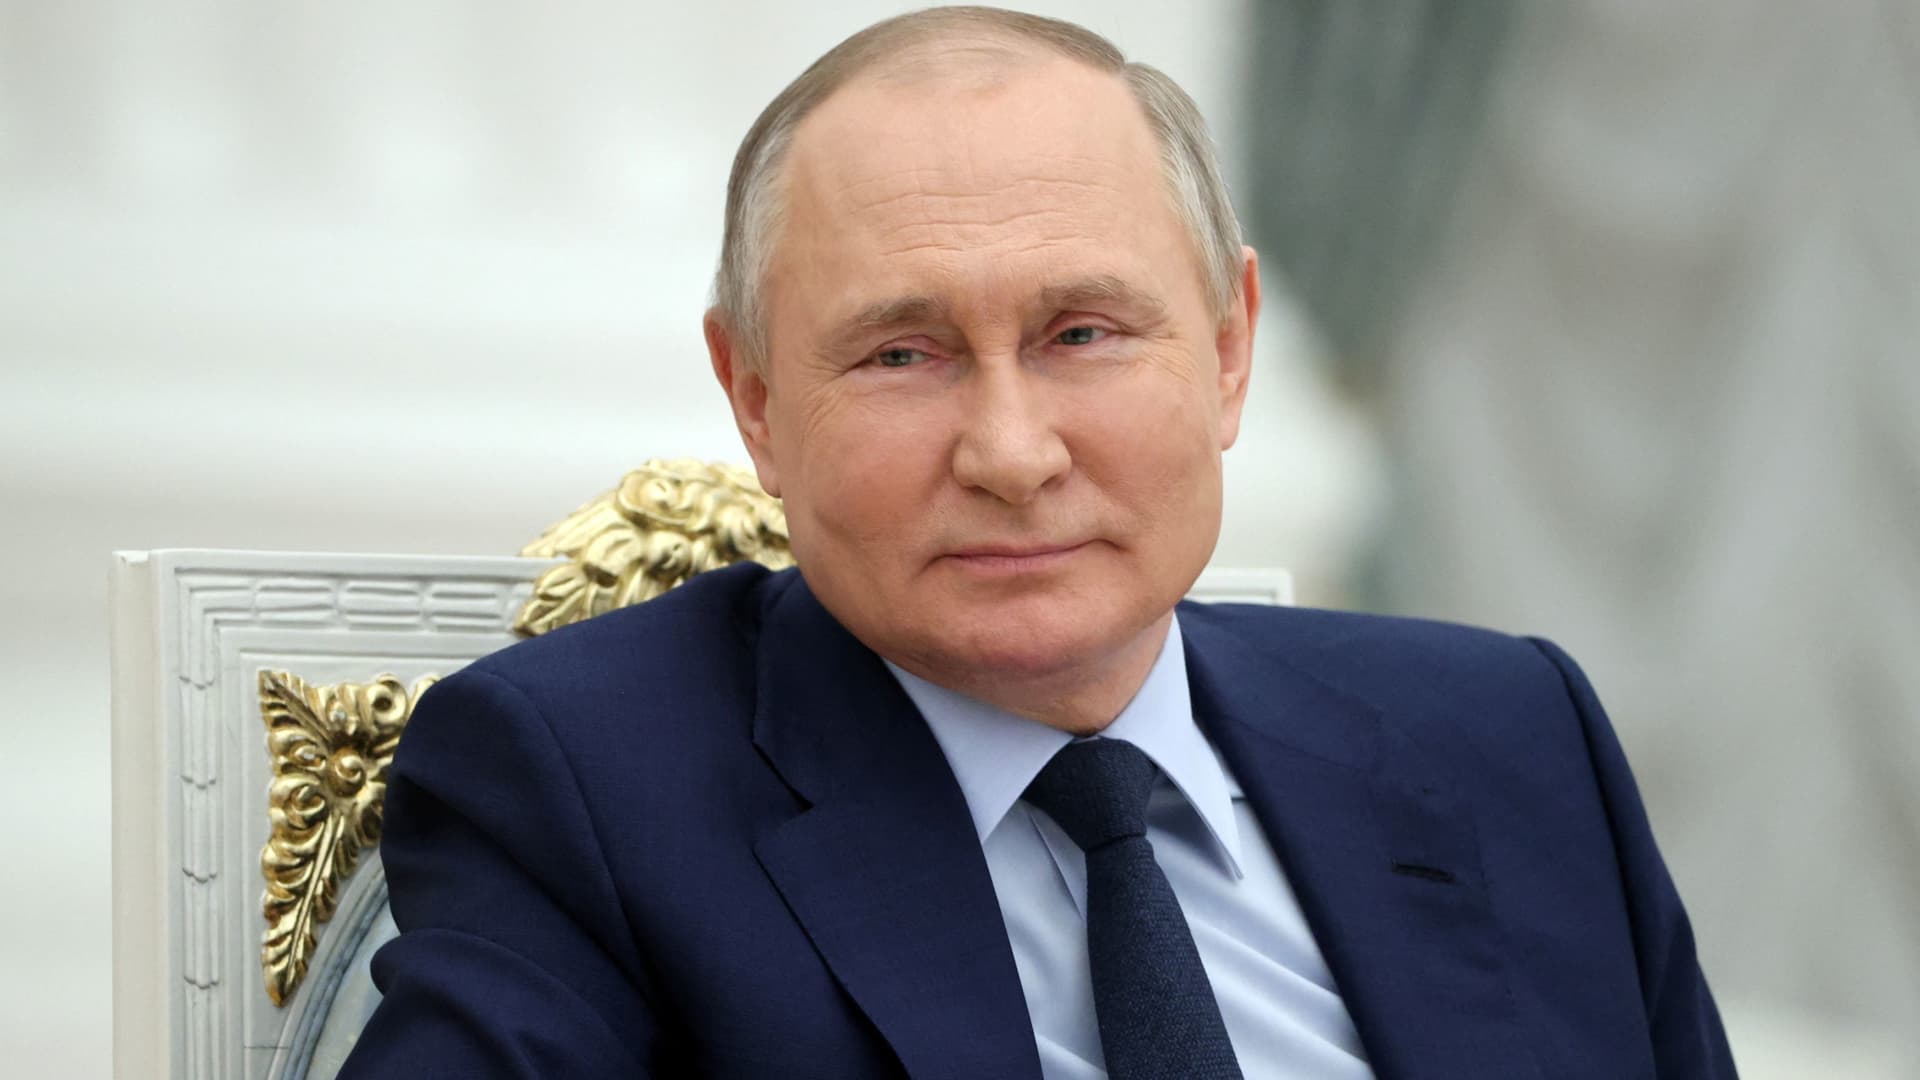 Líderes mundiales critican ataque de Putin a Odesa tras acuerdo de corredor marítimo